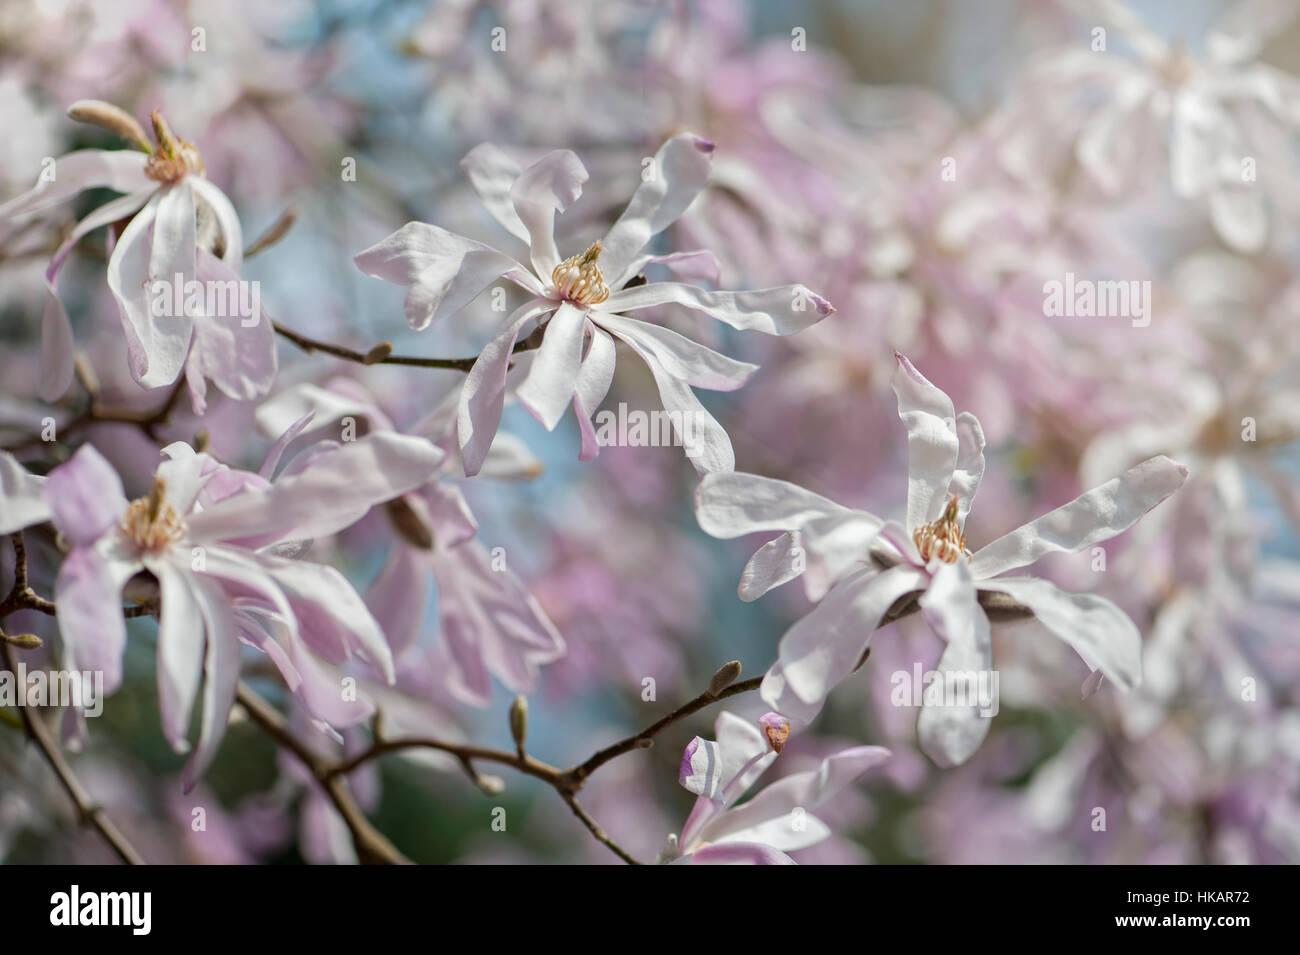 La molla di bellissimi fiori rosa e bianchi di Magnolia stellata noto anche come la stella magnolia, immagine presa contro un cielo blu Foto Stock